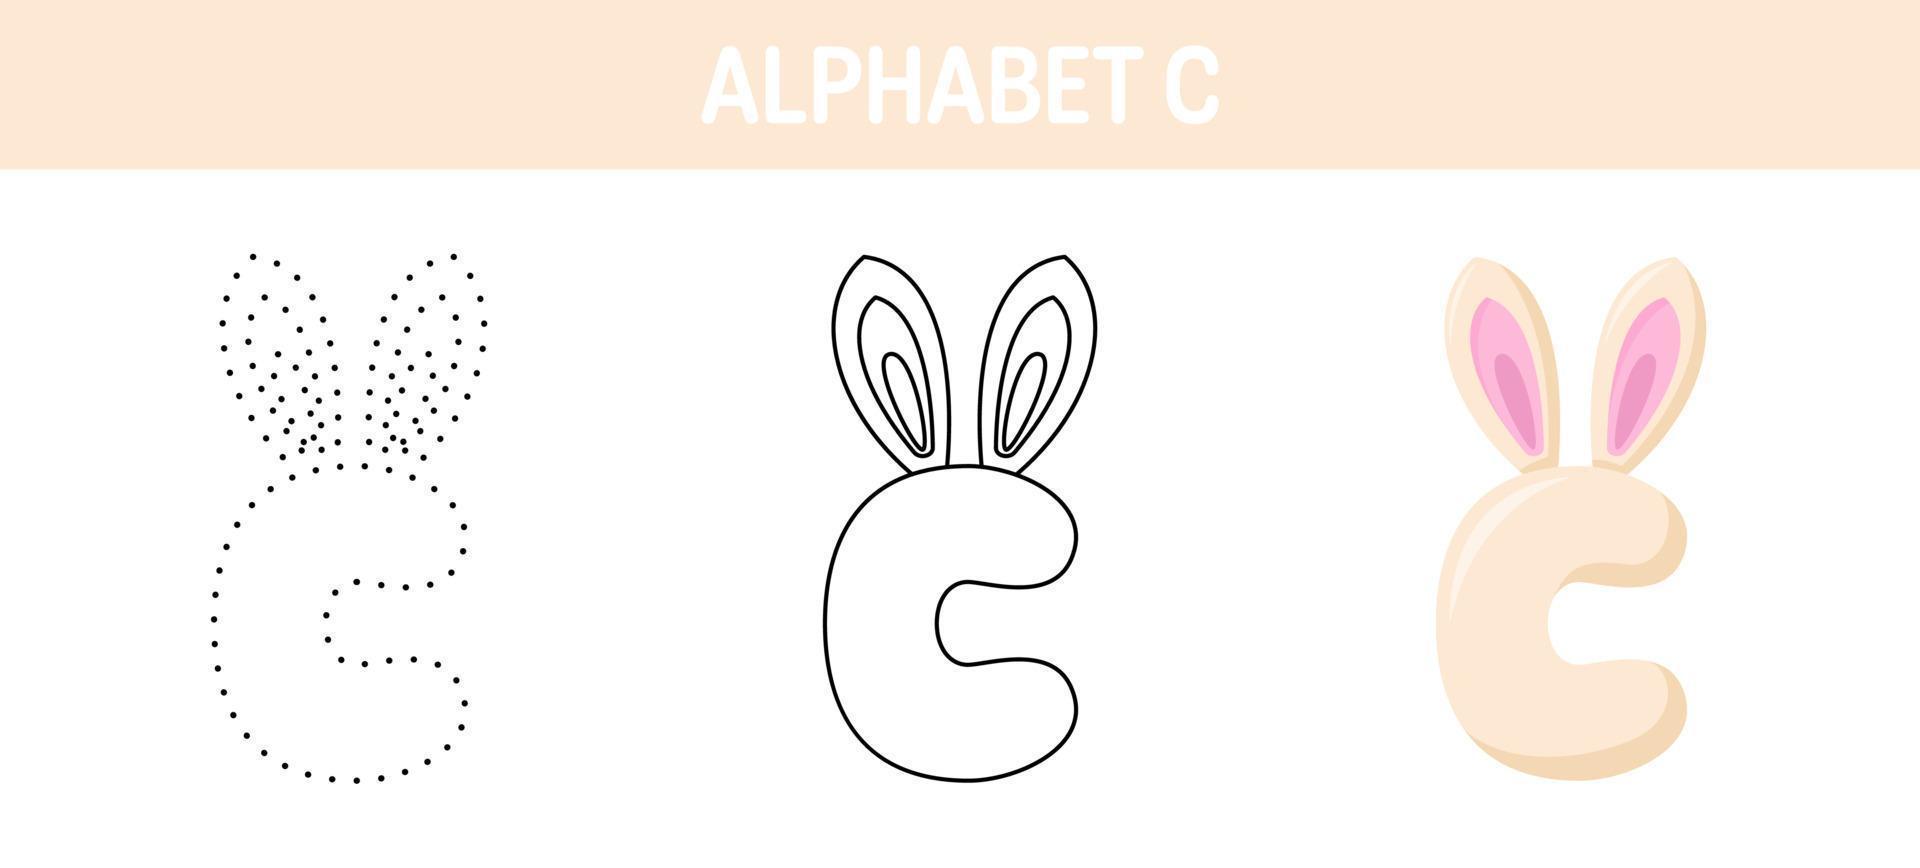 Arbeitsblatt zum nachzeichnen und ausmalen von alphabet c für kinder vektor